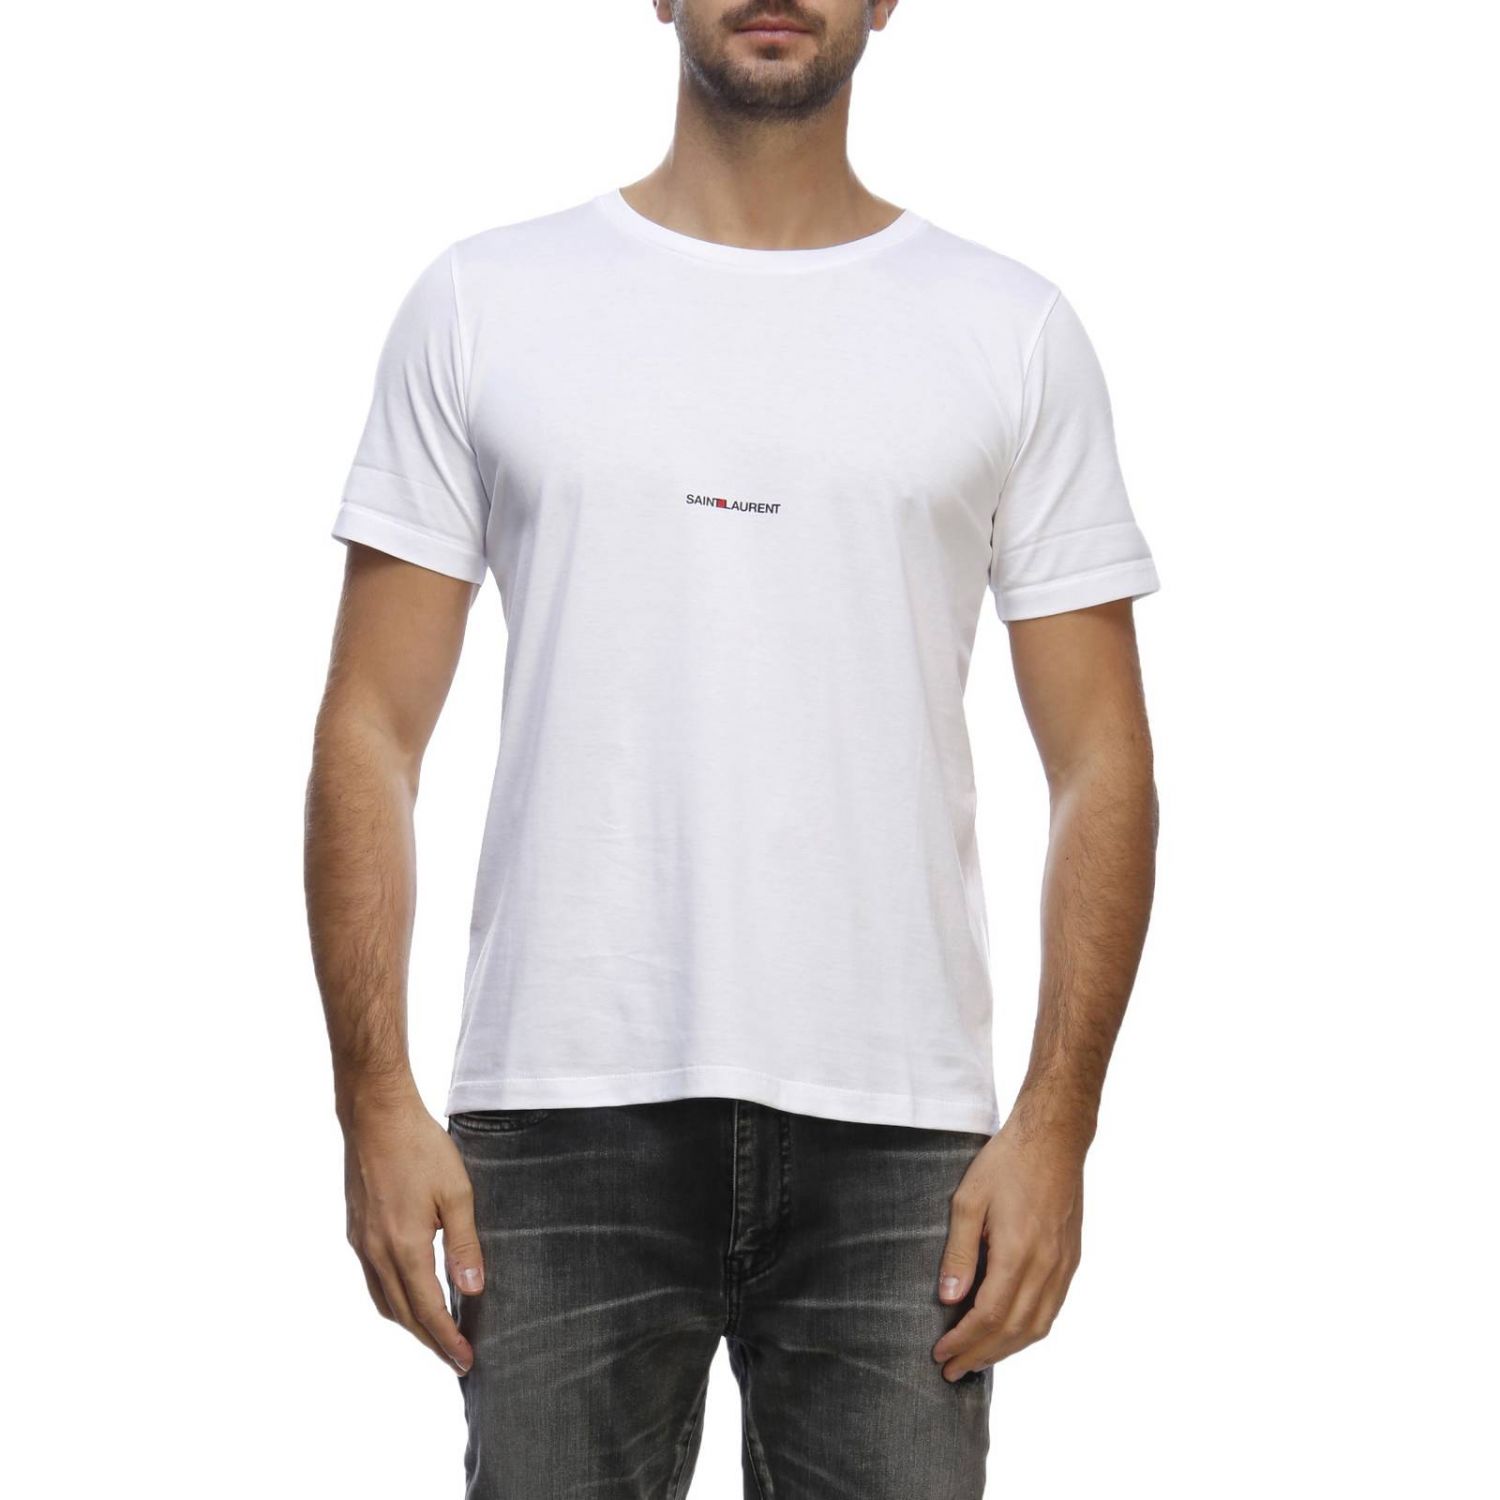 Saint Laurent Shirt White on Sale, 53% OFF | www.nogracias.org